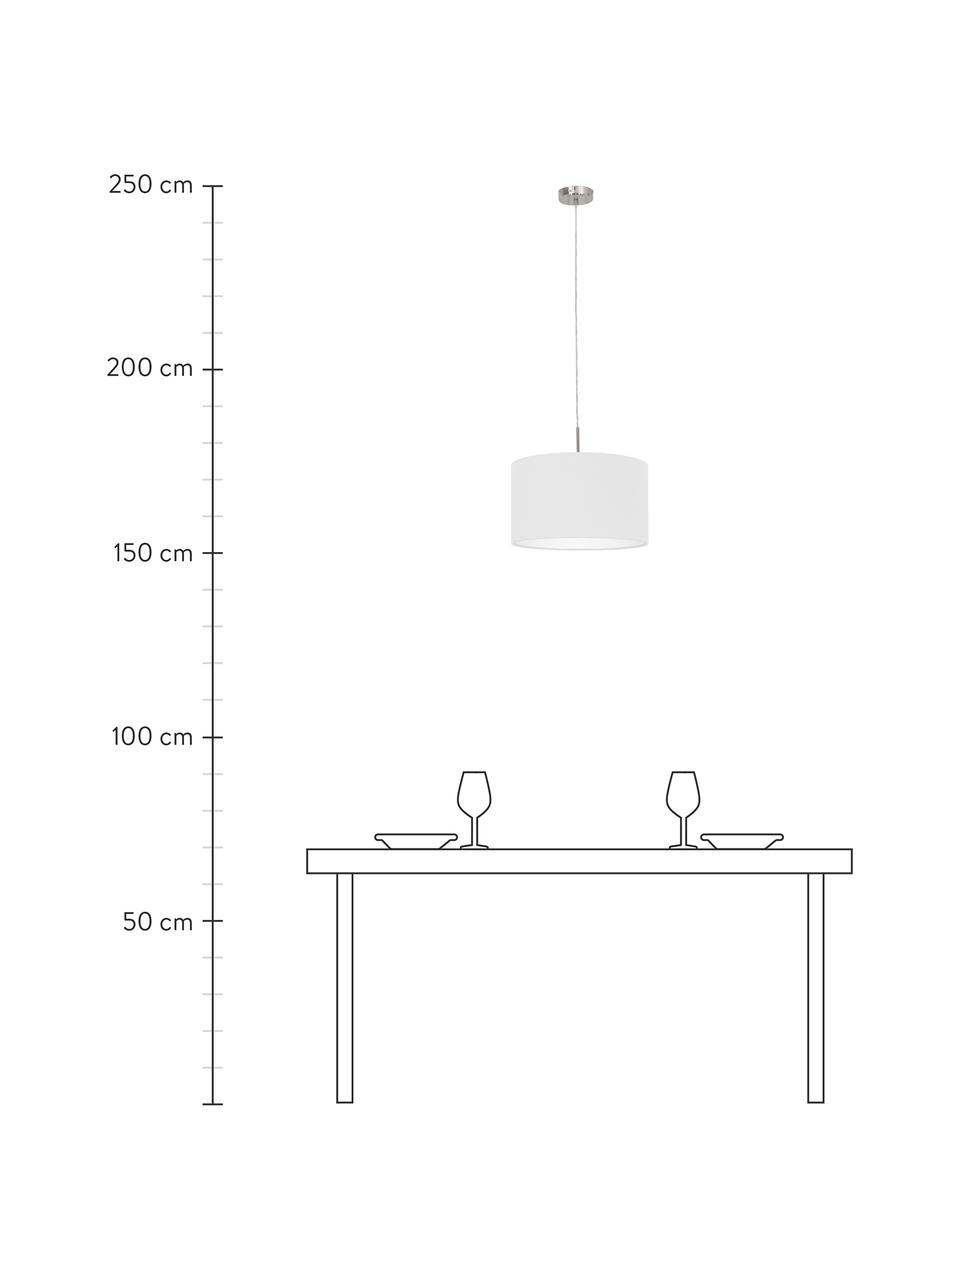 Lámpara de techo Parry, Pantalla: tela, Fijación: metal niquelado, Cable: plástico, Blanco, Ø 38 x Al 22 cm